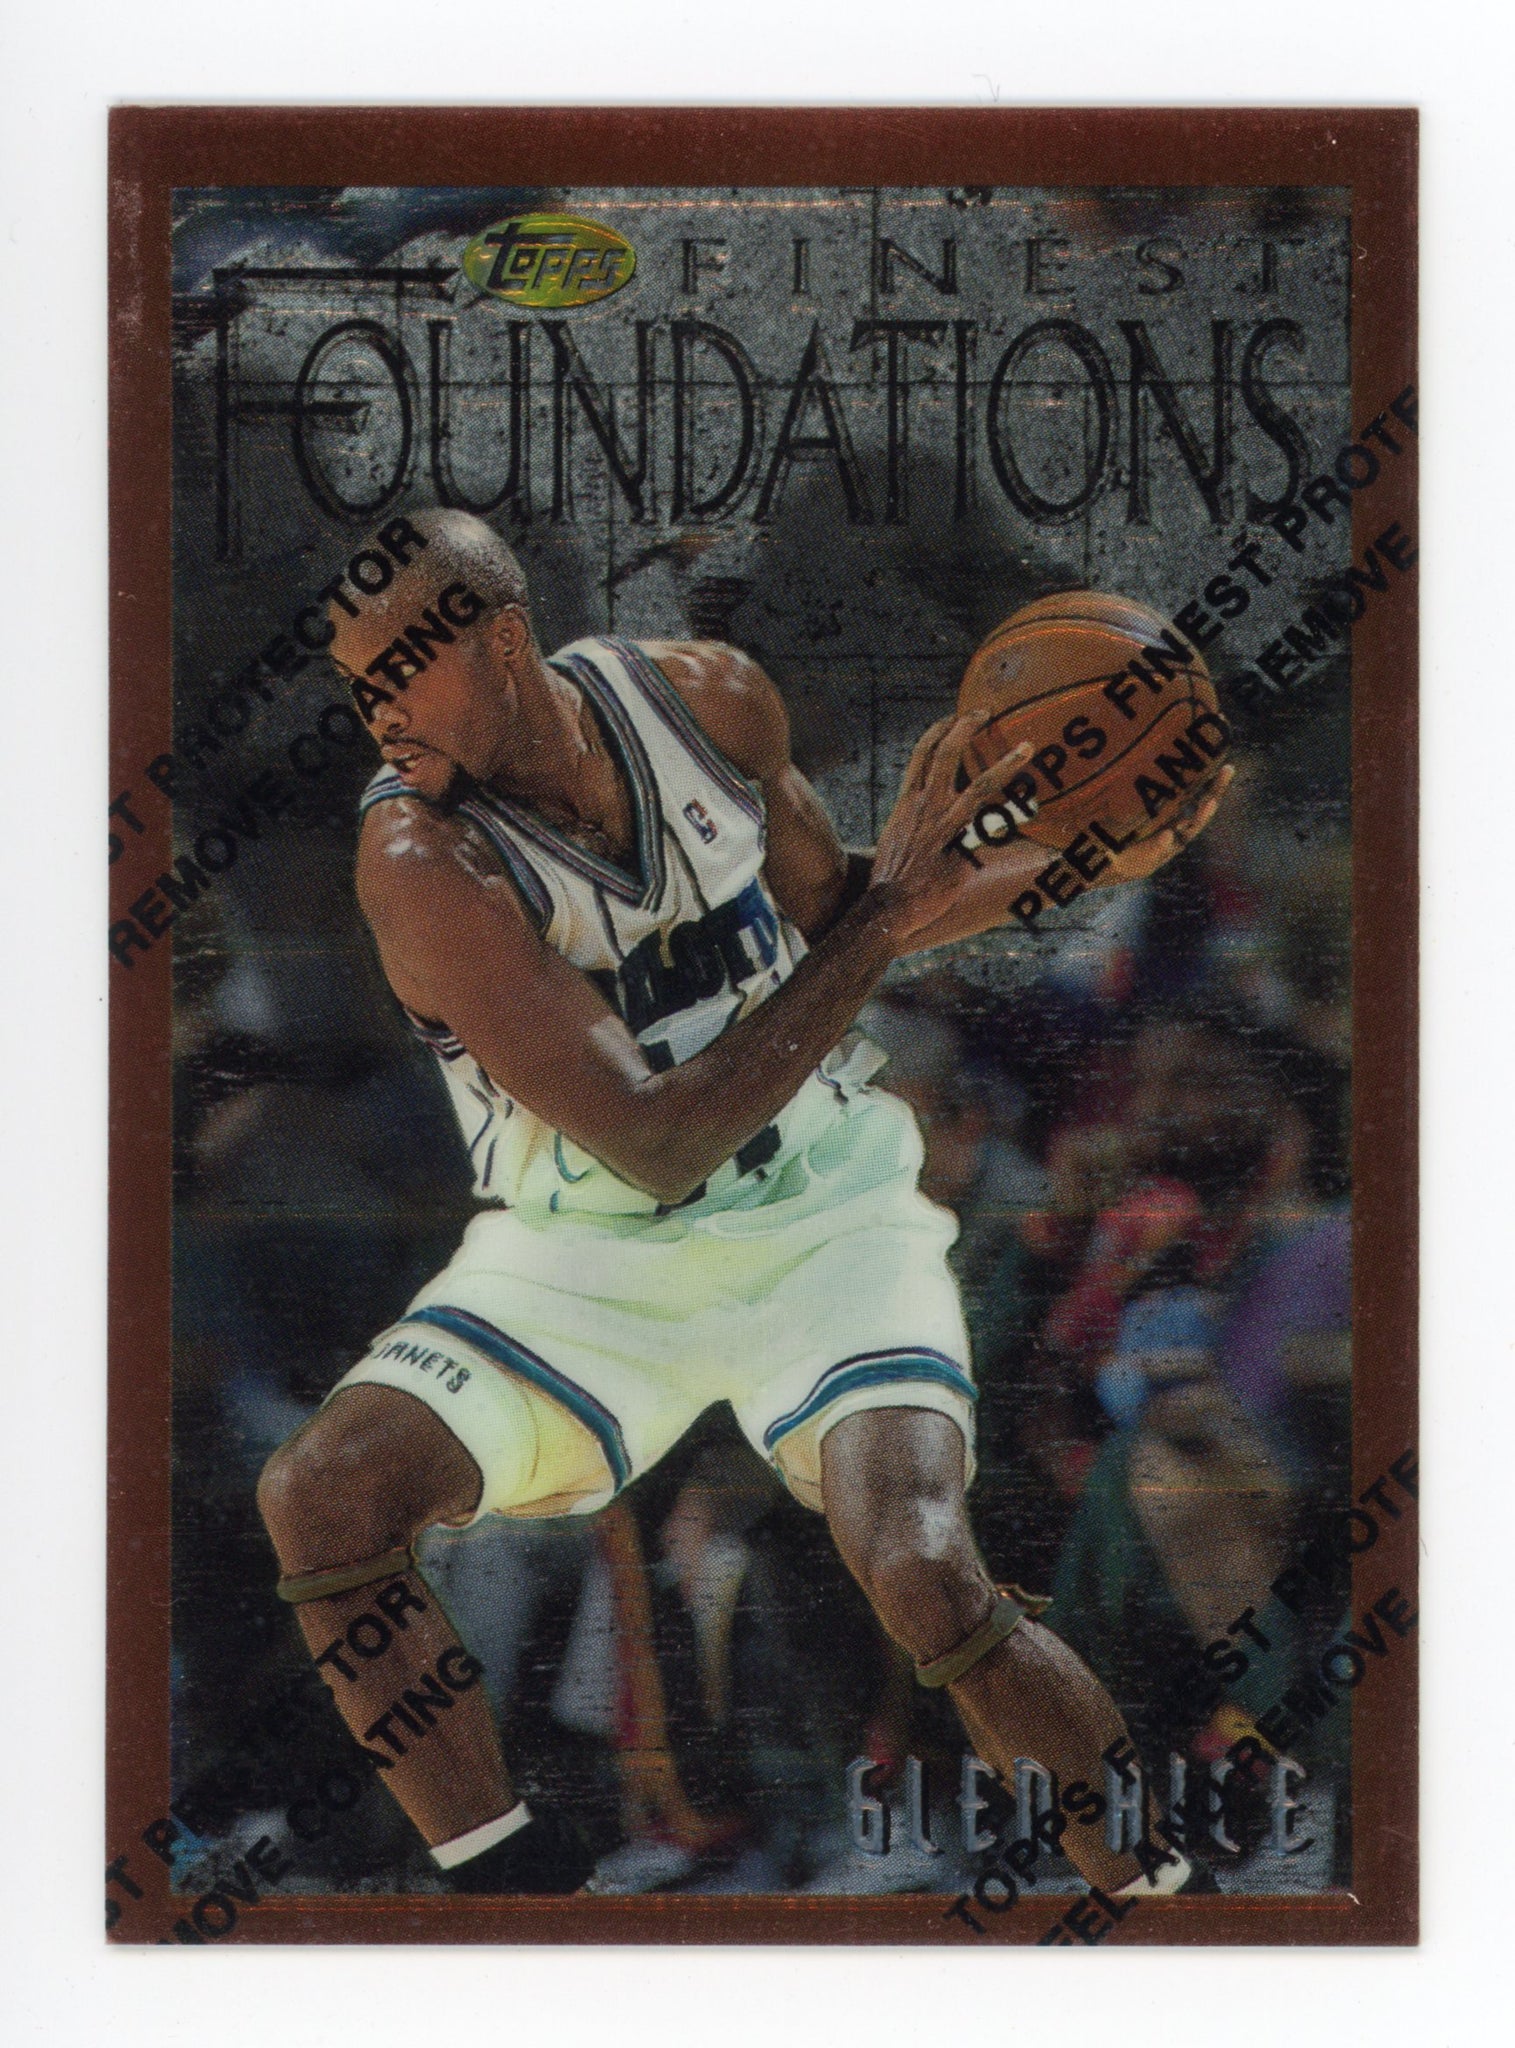 1997 Glen Rice Topps Finest Foundations Charlotte Hornets # 238